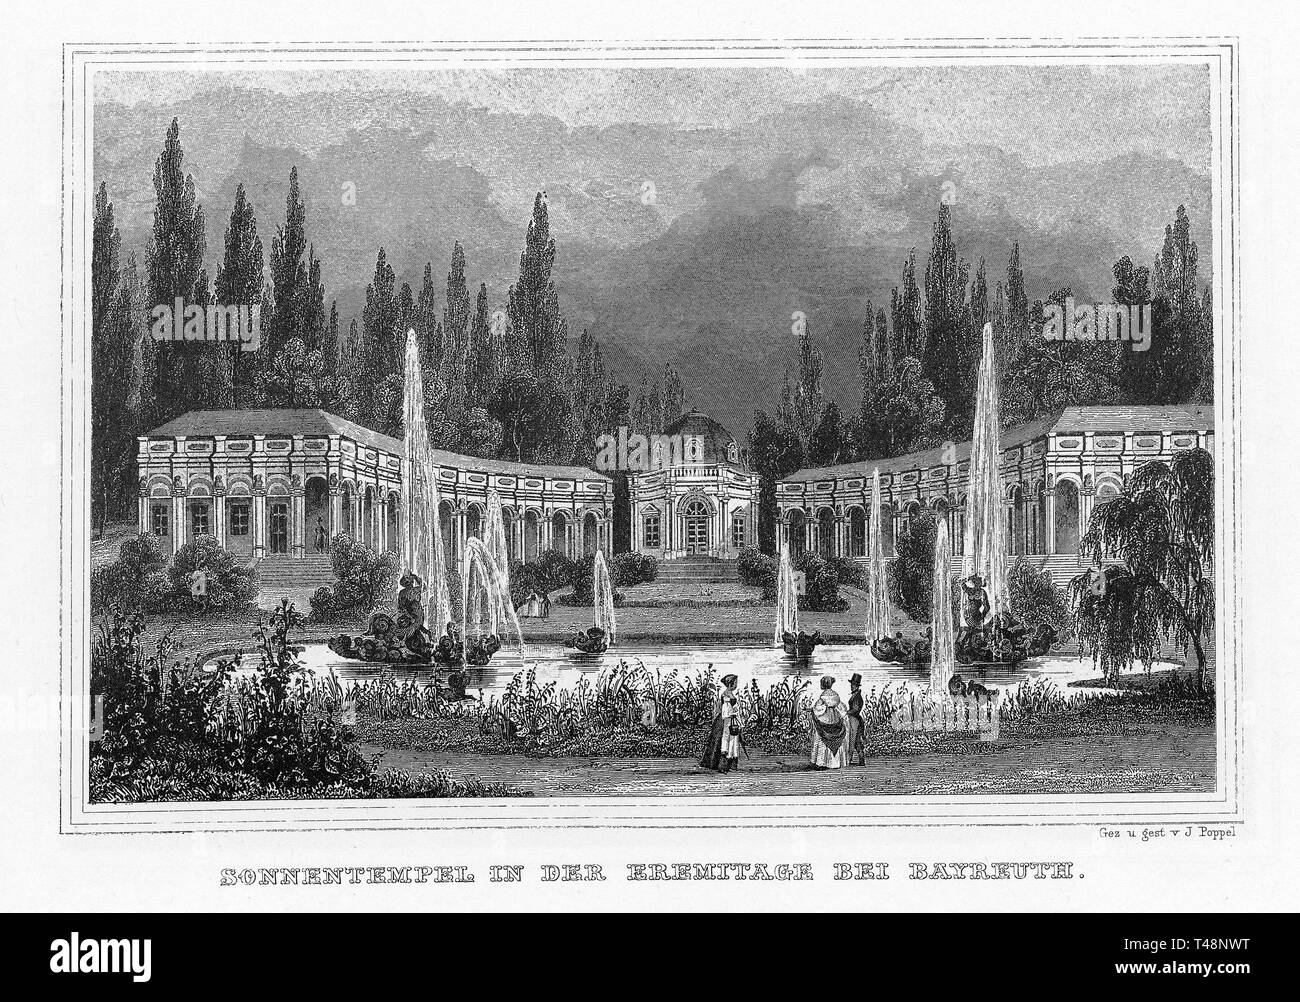 Tempel der Sonne, Hermitage, Bayreuth, Zeichnung und Stahlstich von J. Poppel, 1840-54, Königreich Bayern, Deutschland Stockfoto